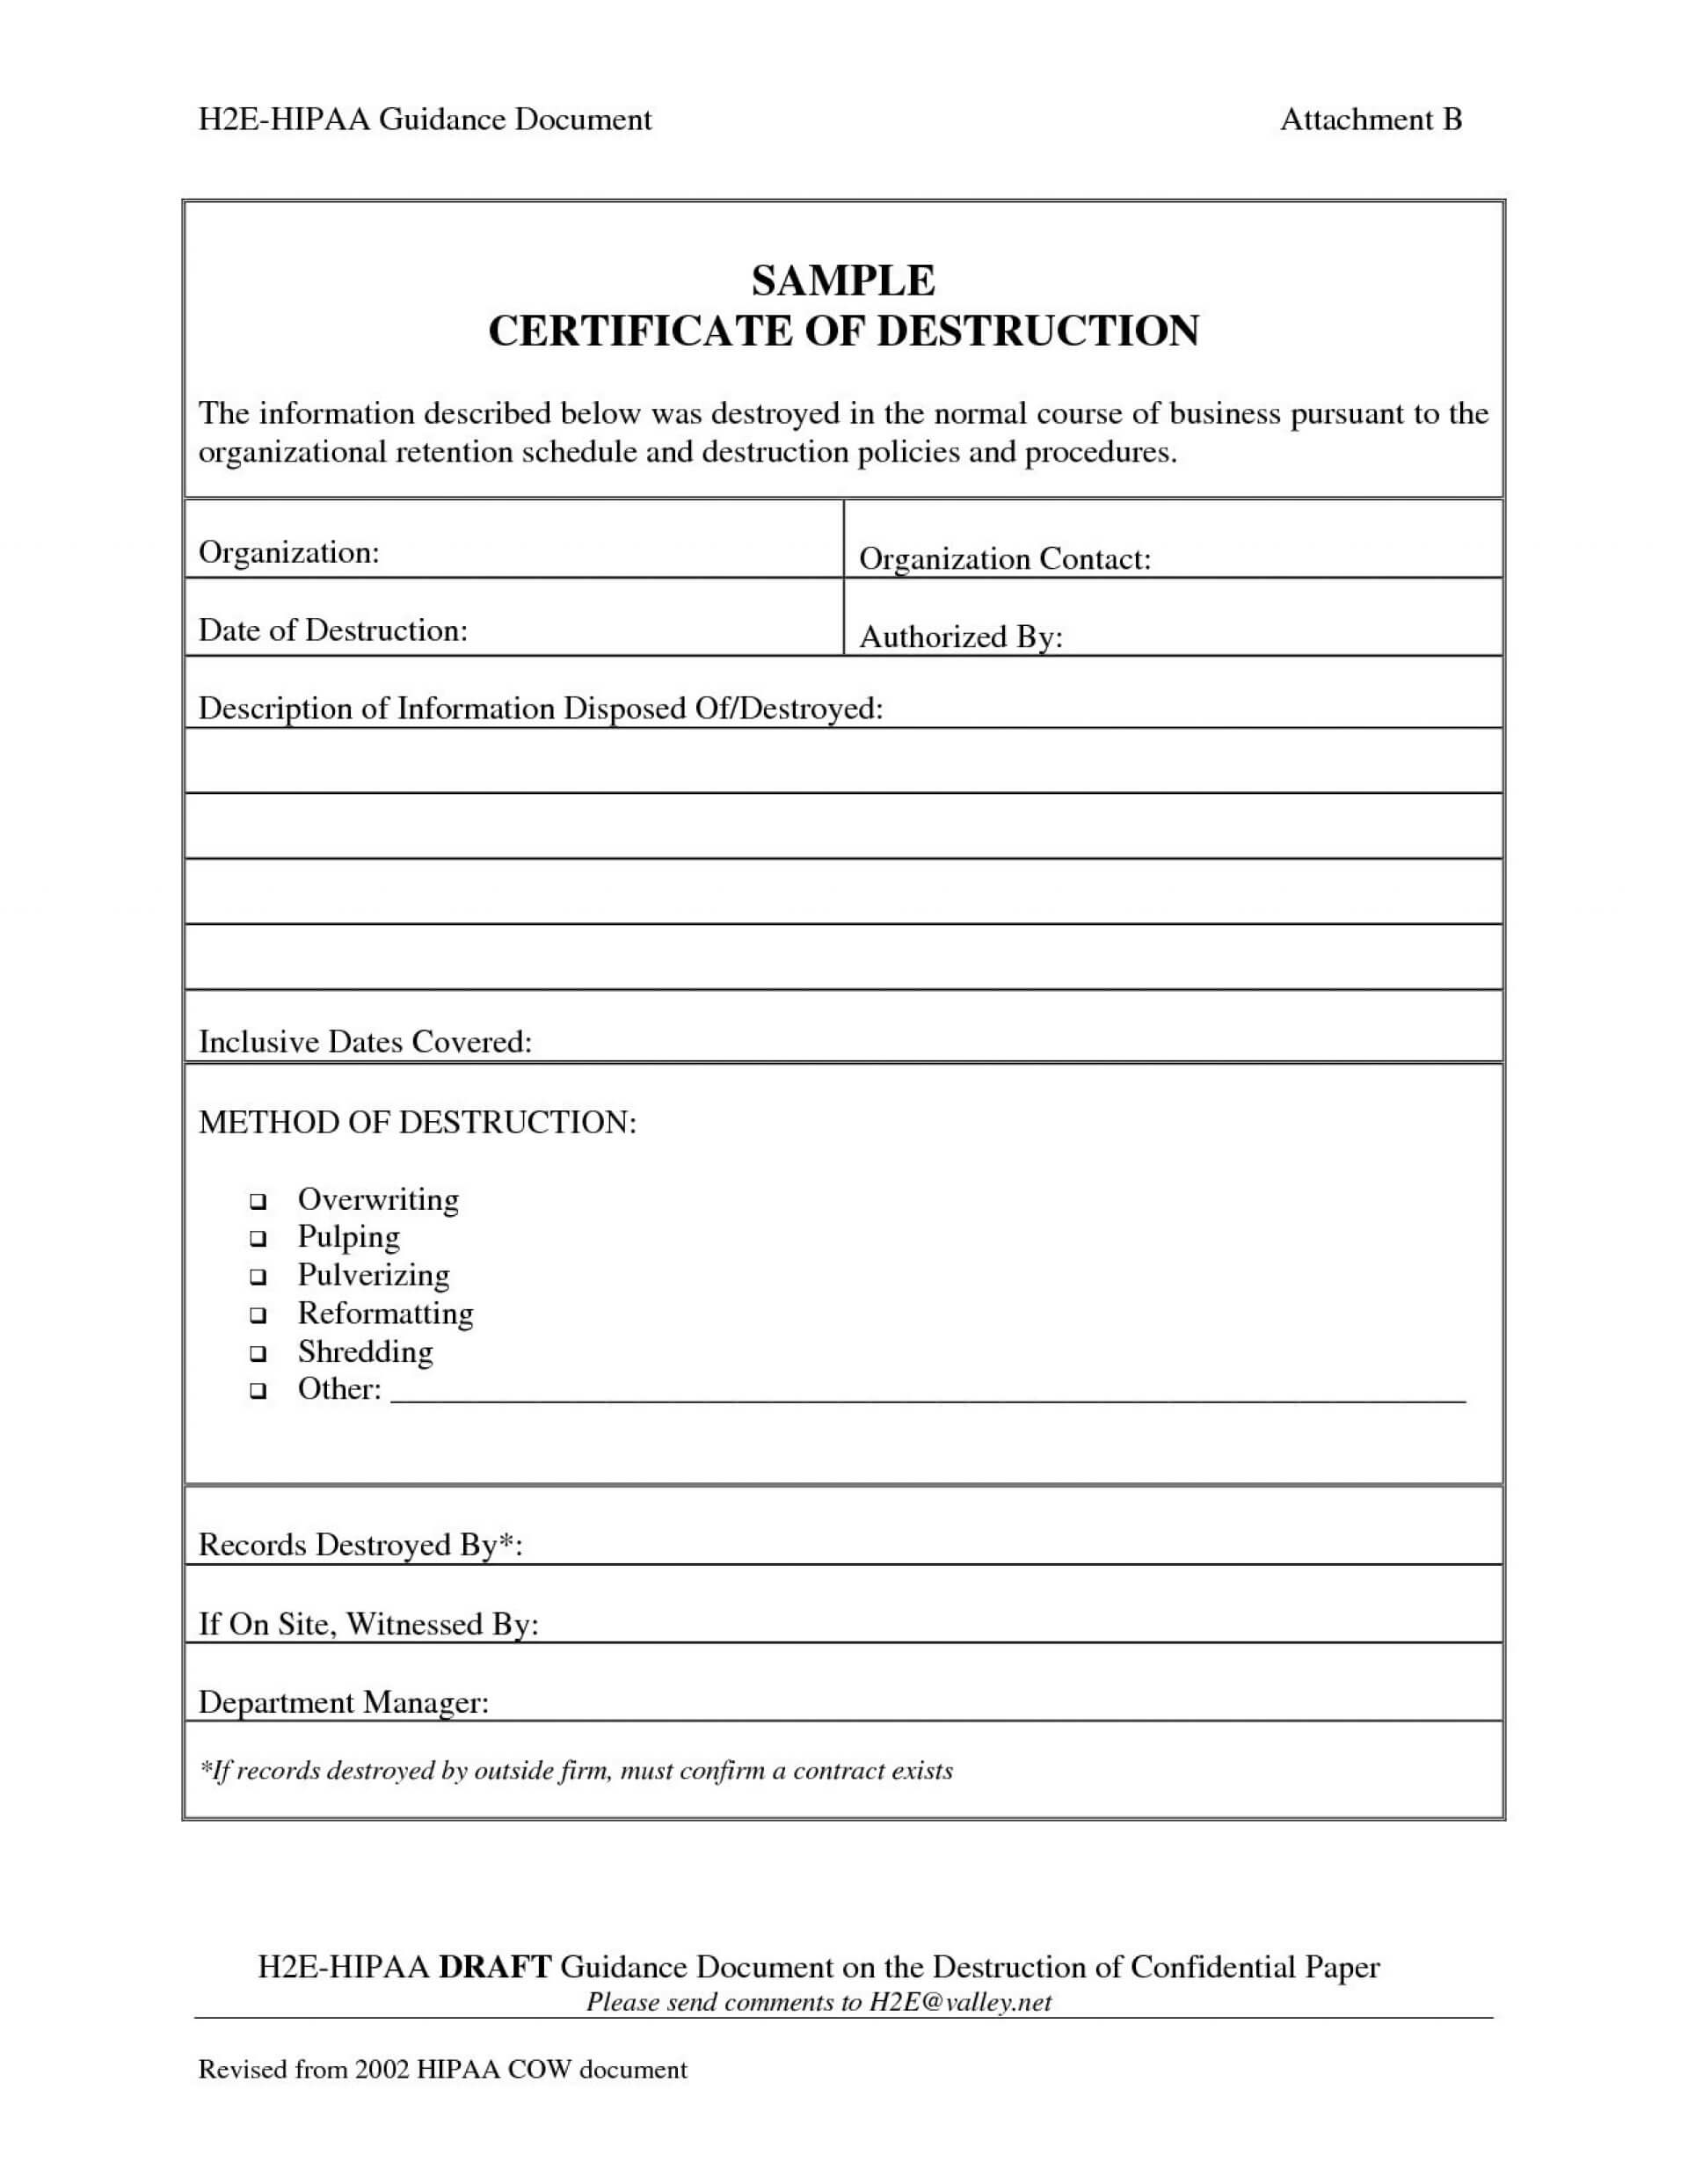 005 Certificate Of Destruction Template Ideas Exceptional For Certificate Of Destruction Template